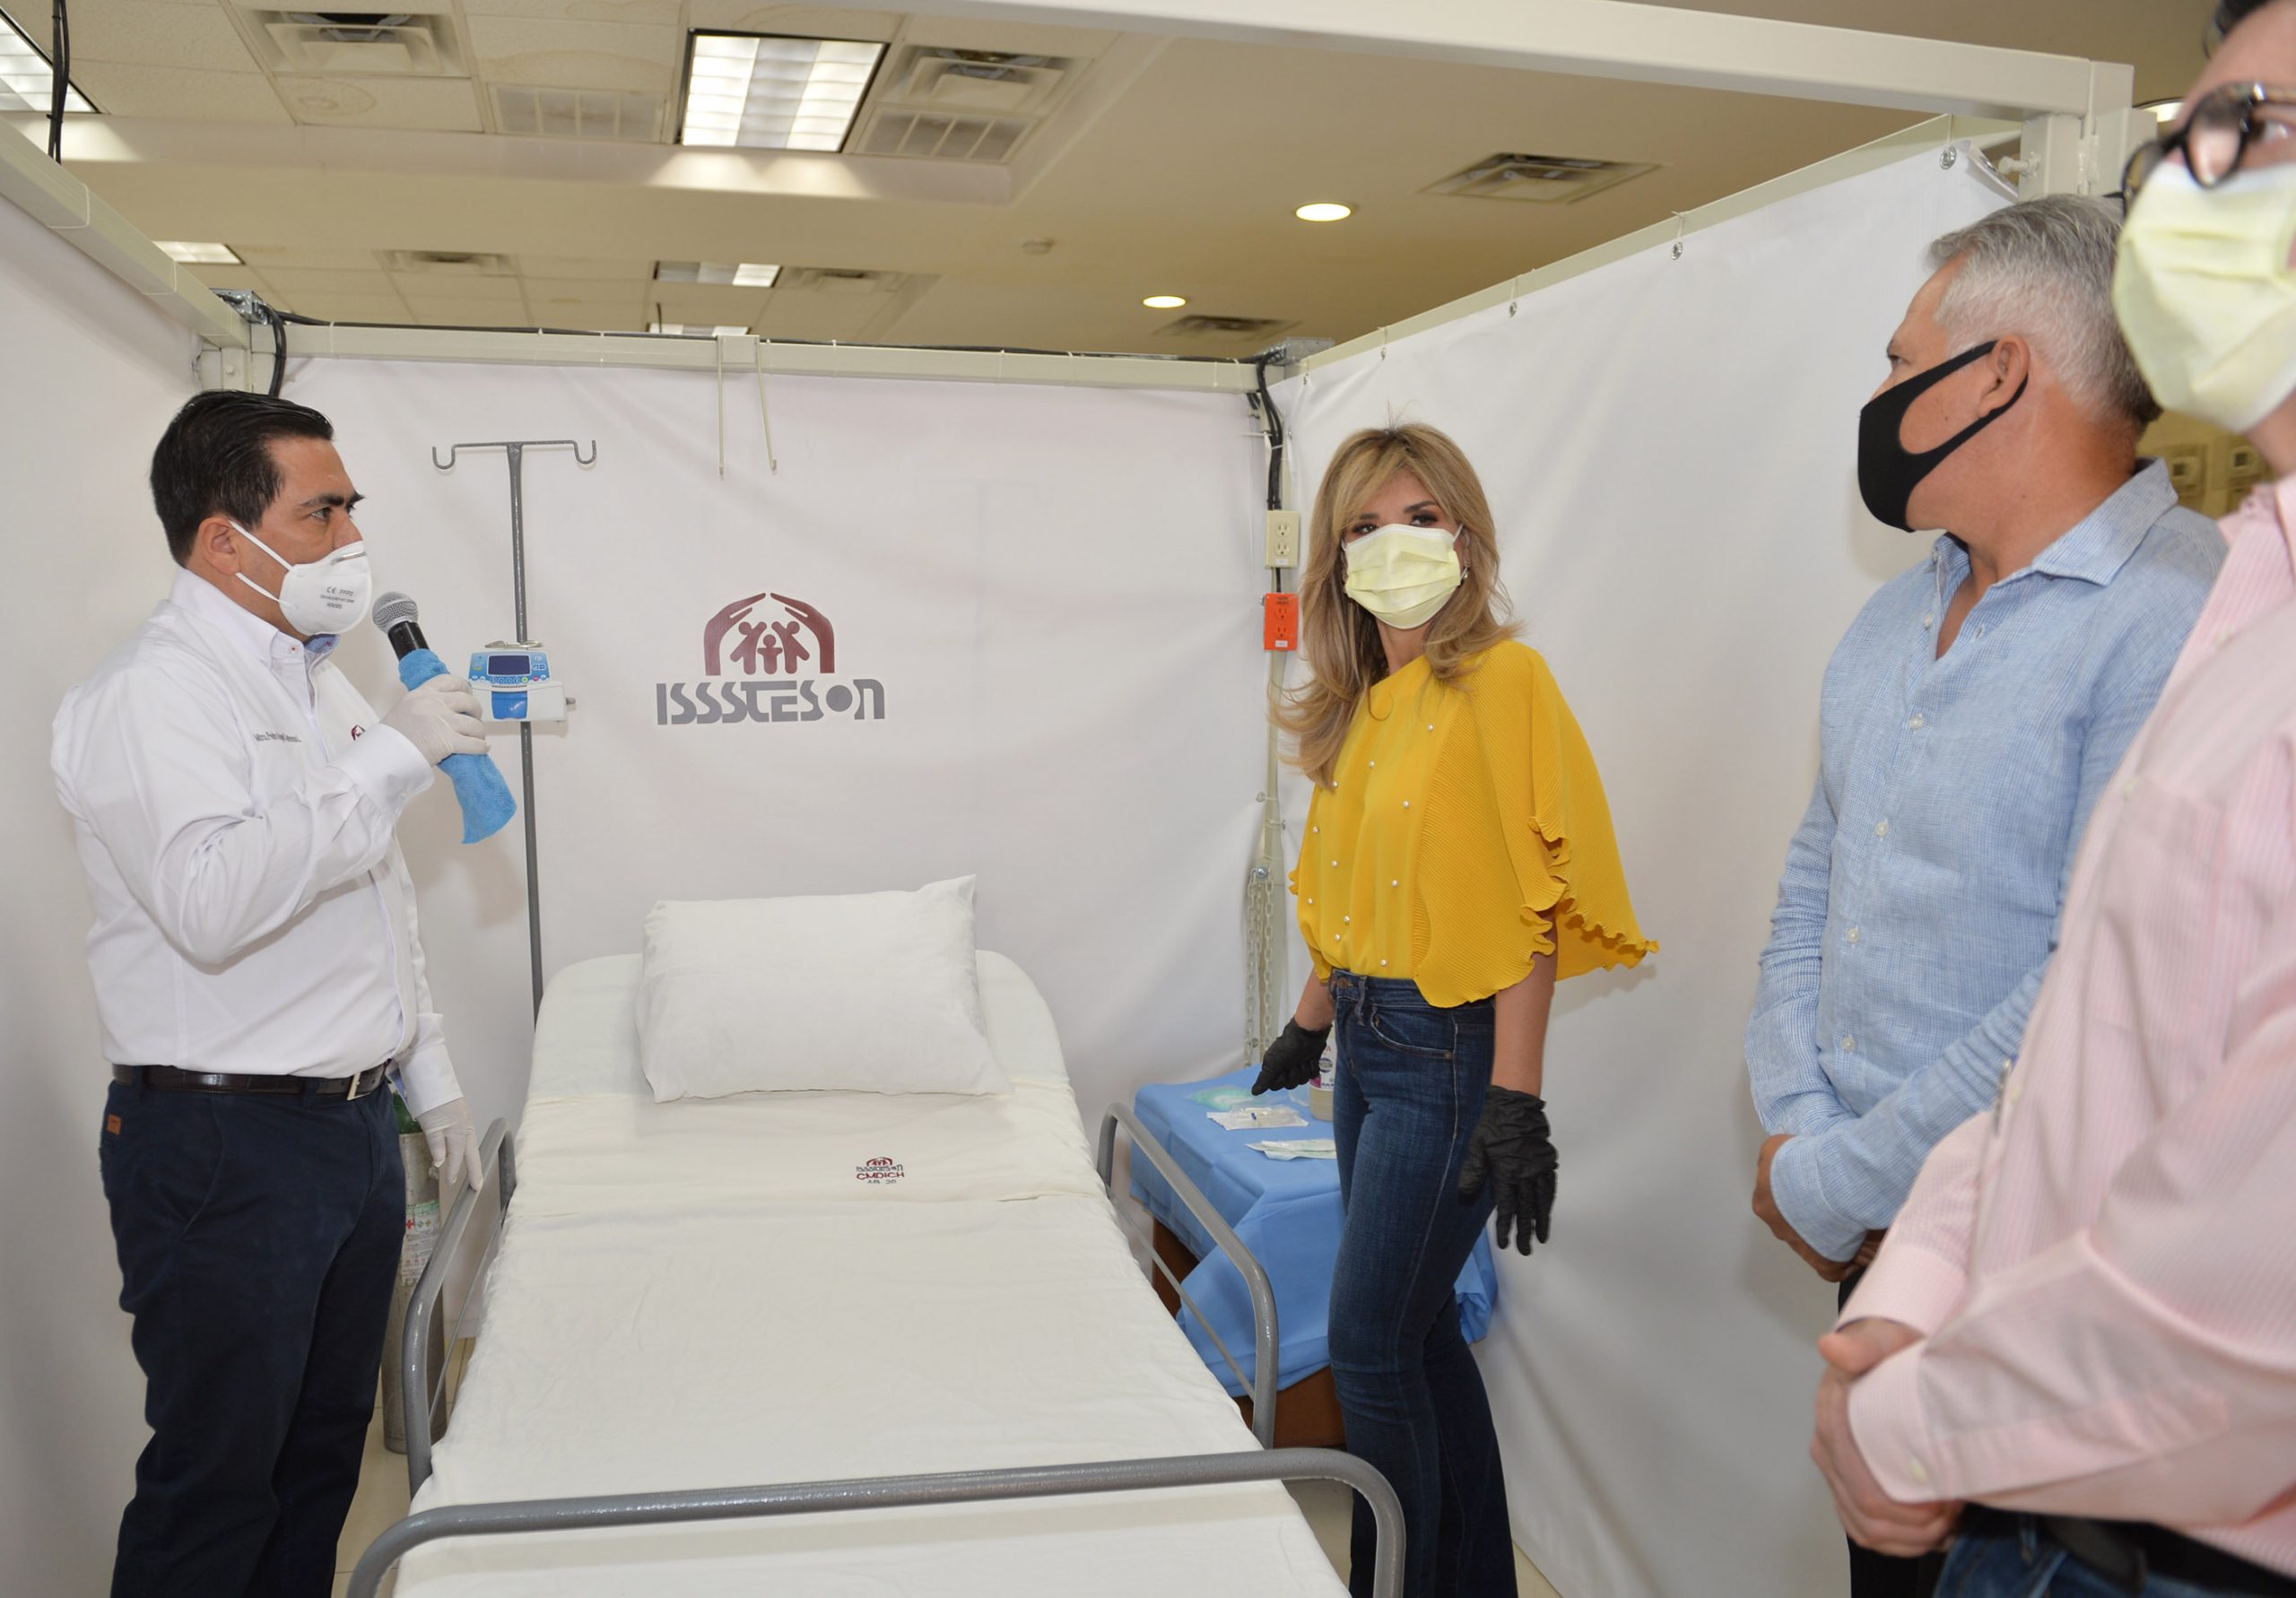 Un hotel del SNTE se convierte en un hospital de 101 camas en Sonora